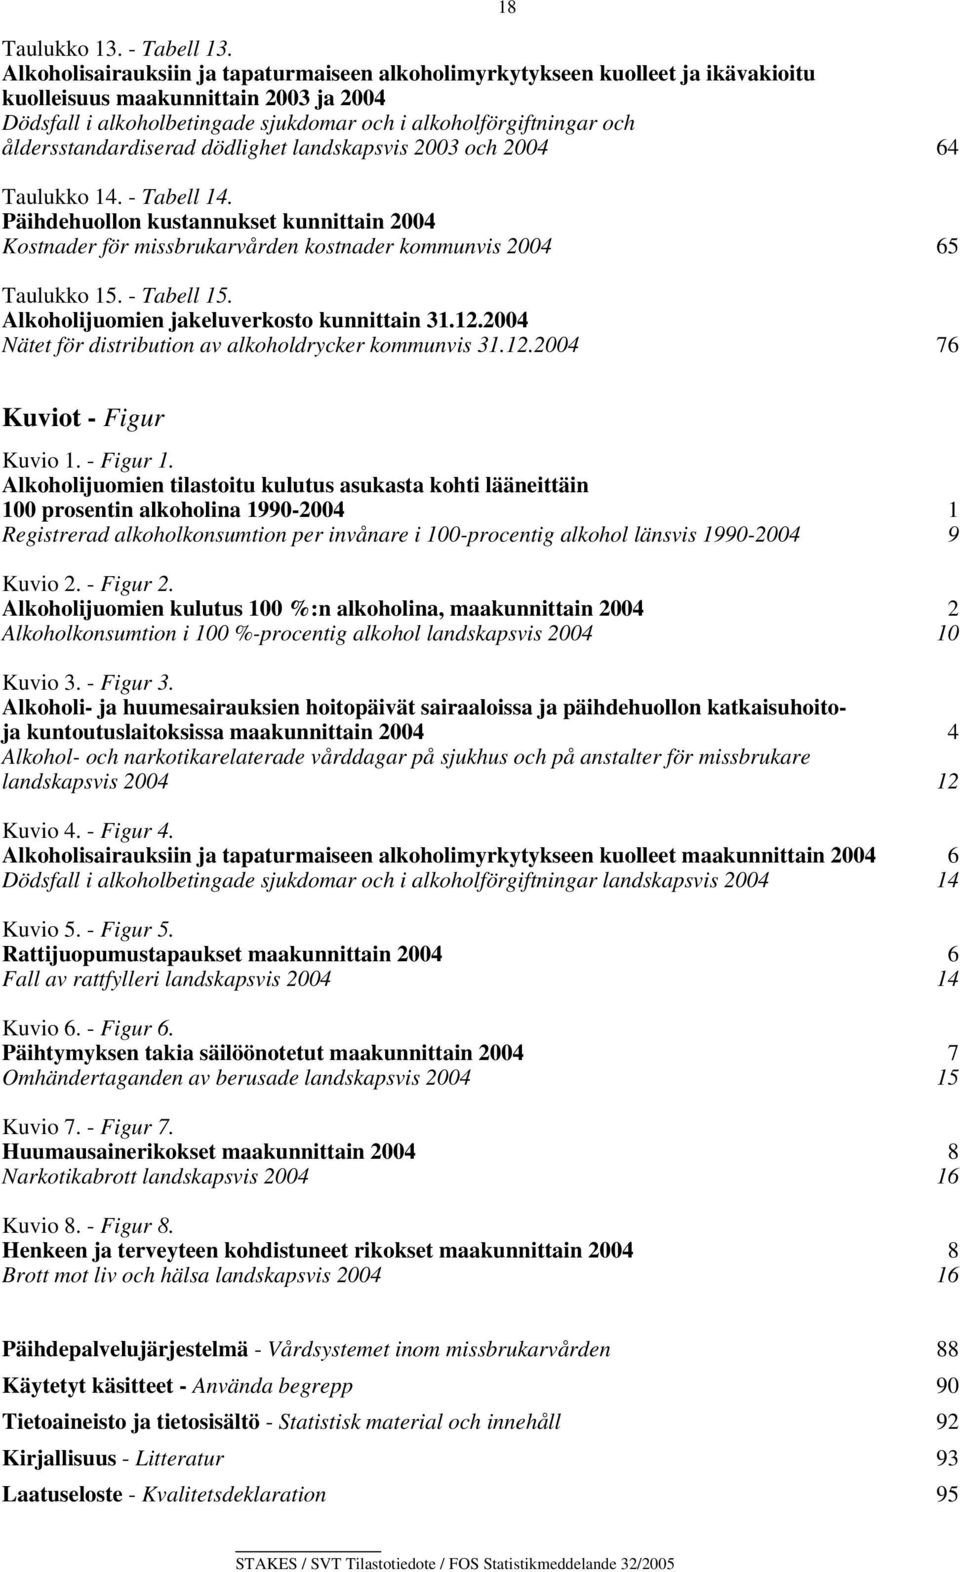 åldersstandardiserad dödlighet landskapsvis 2003 och 2004 64 Taulukko 14. - Tabell 14.